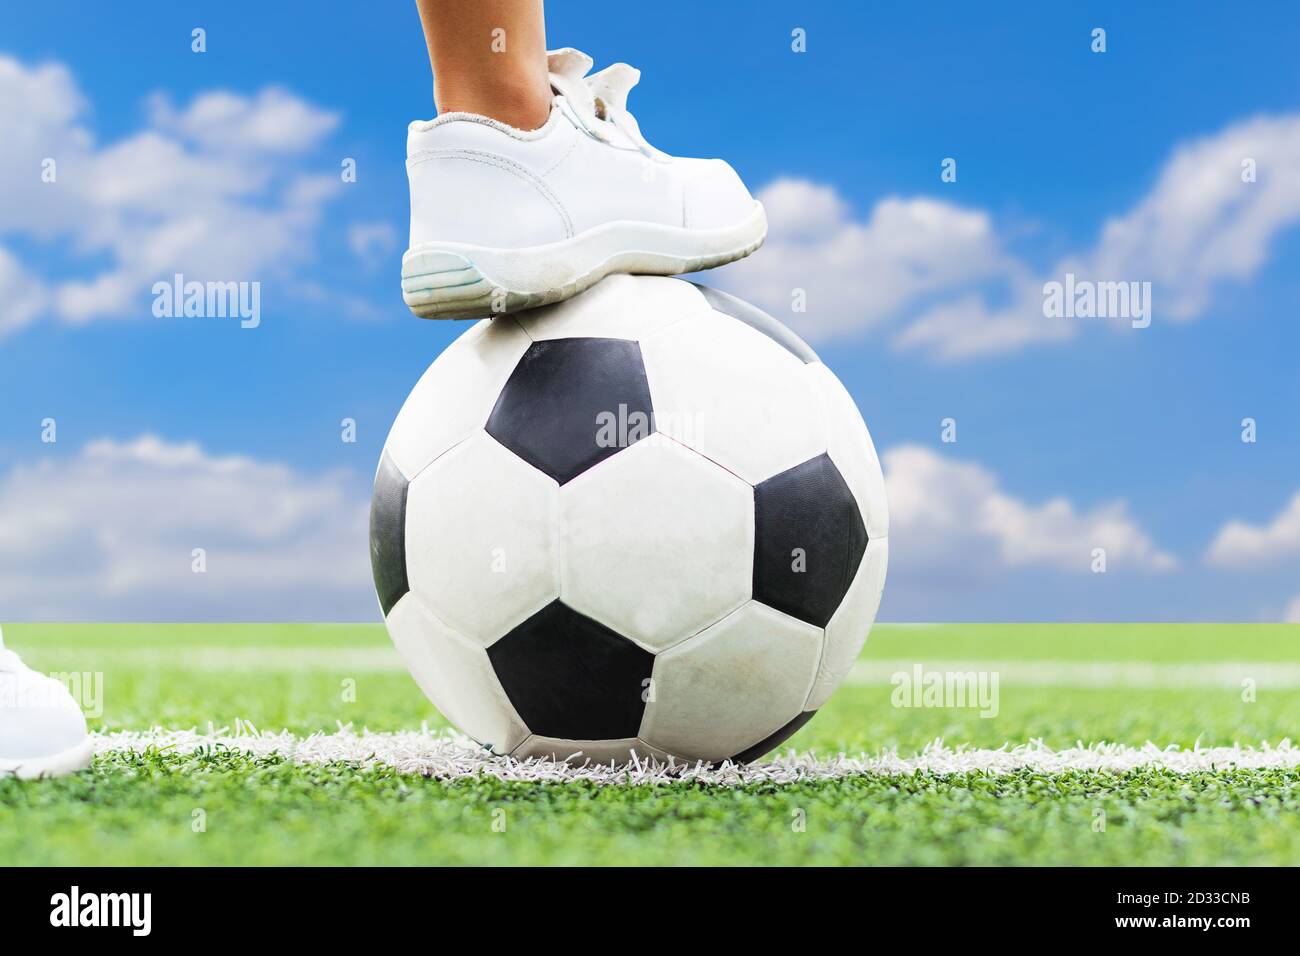 Pieds d'un garçon portant des baskets blanches qui marche sur une balle de football au milieu du terrain de football. Banque D'Images